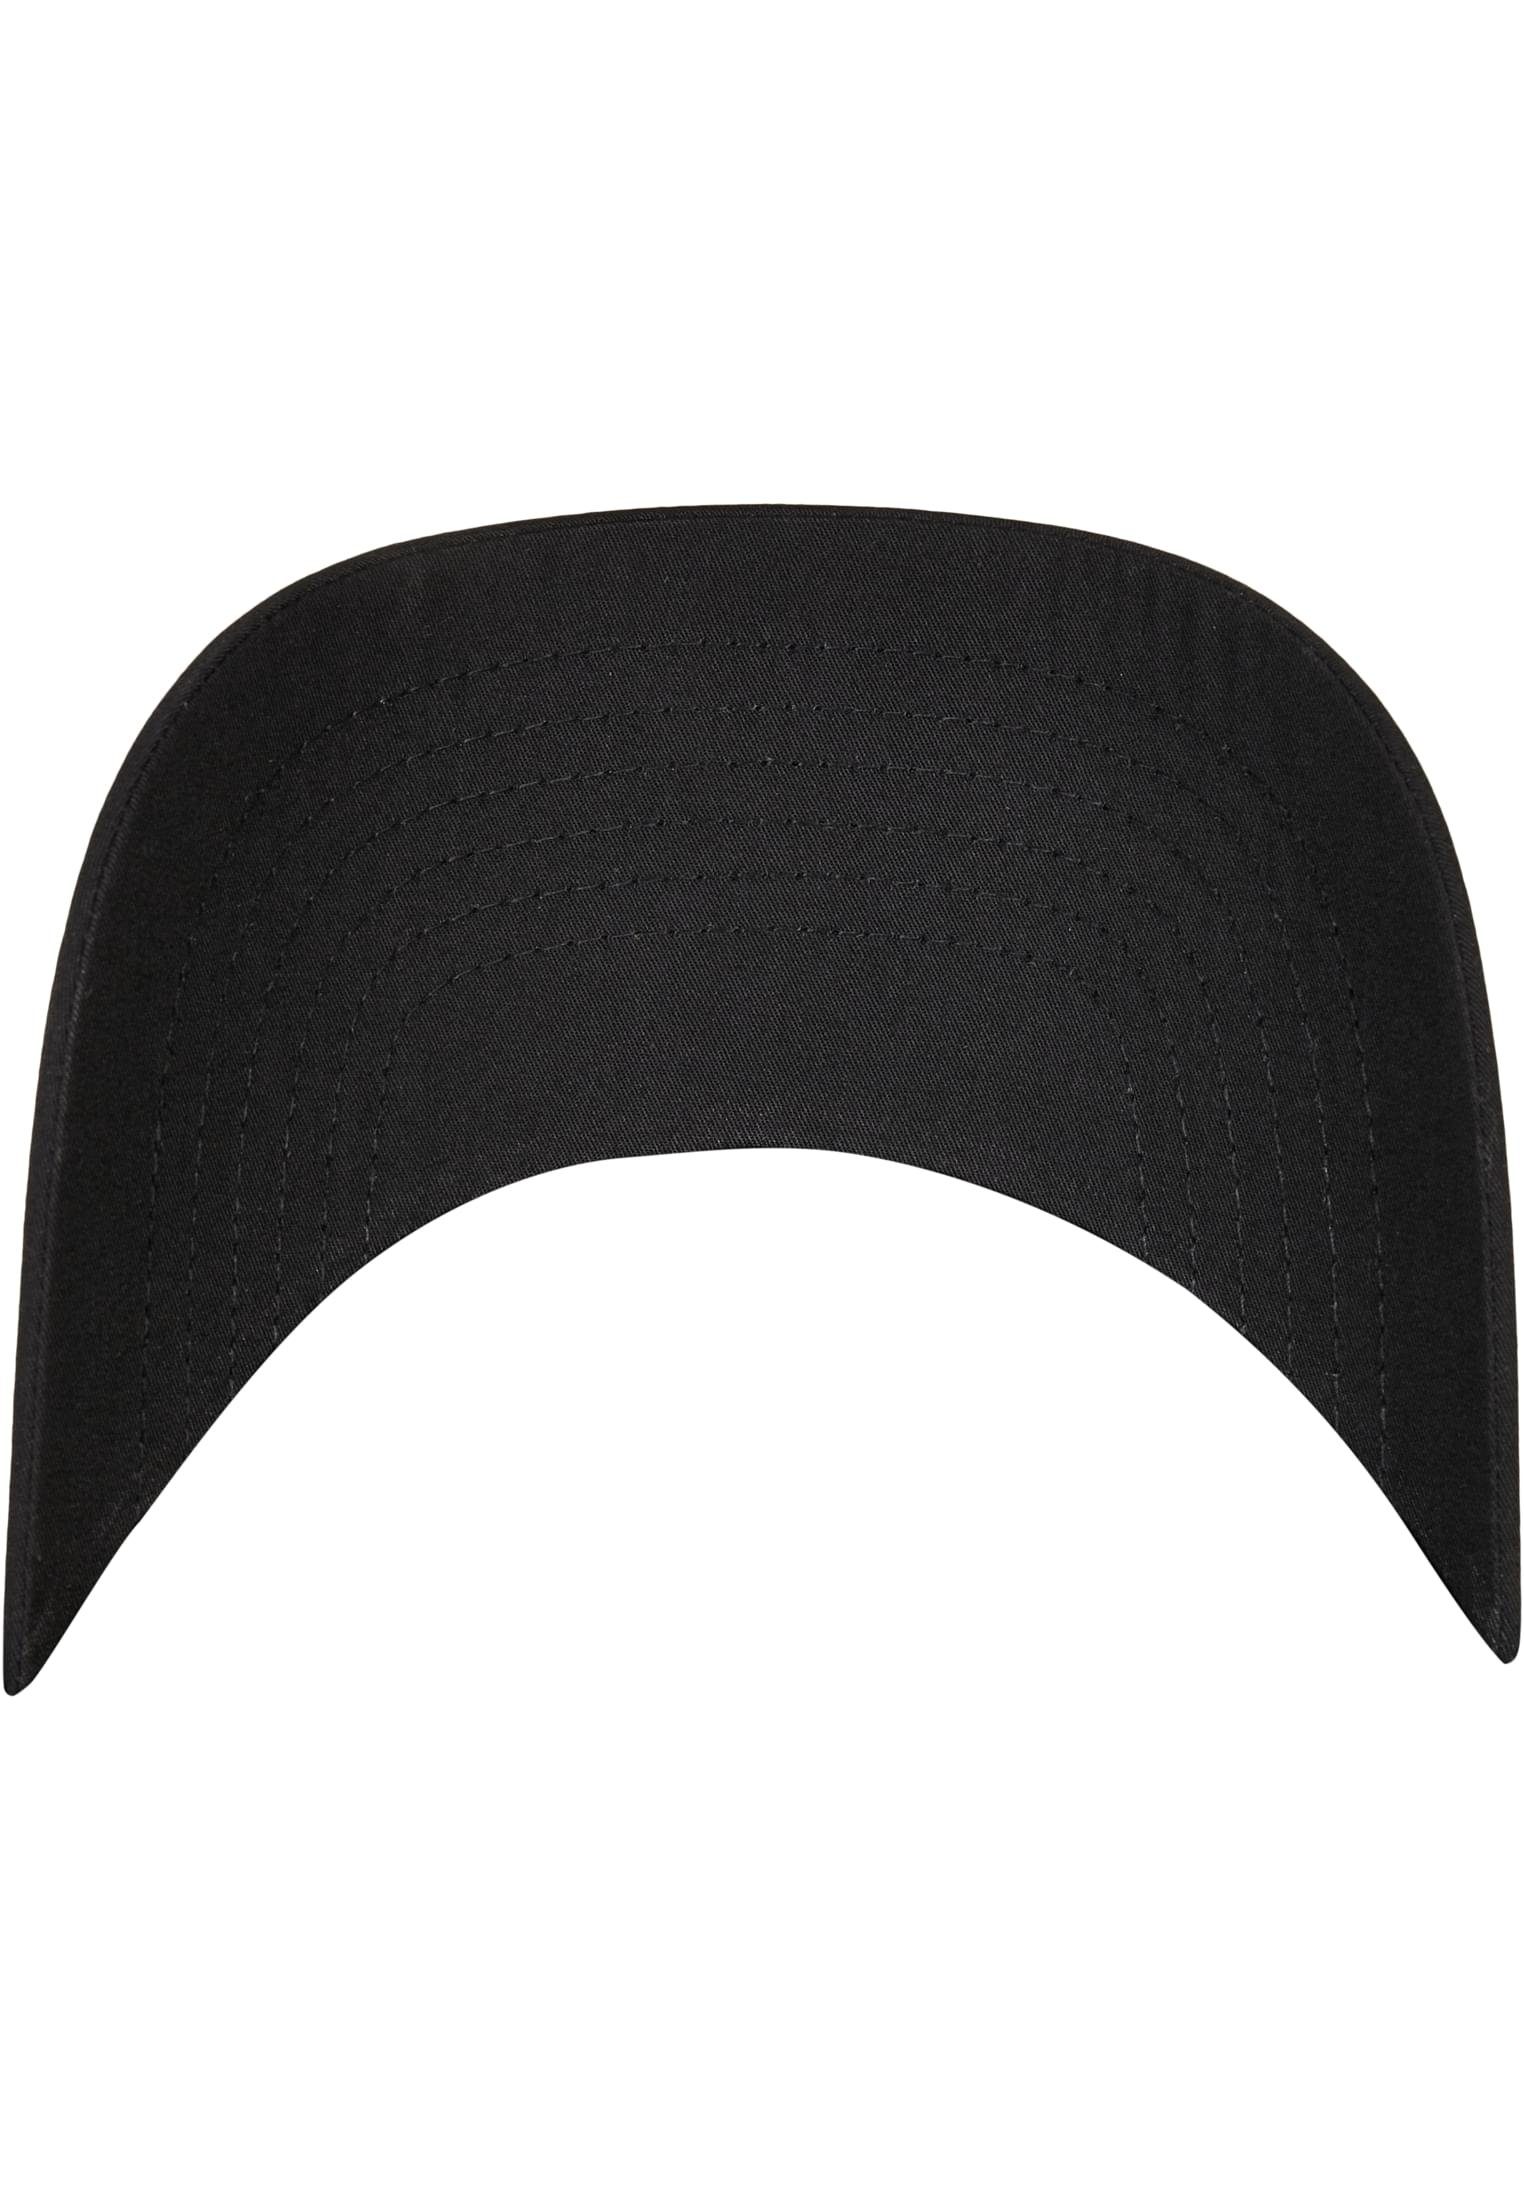 Flexfit Flex Cap Accessoires Recycled Polyester black Cap Dad